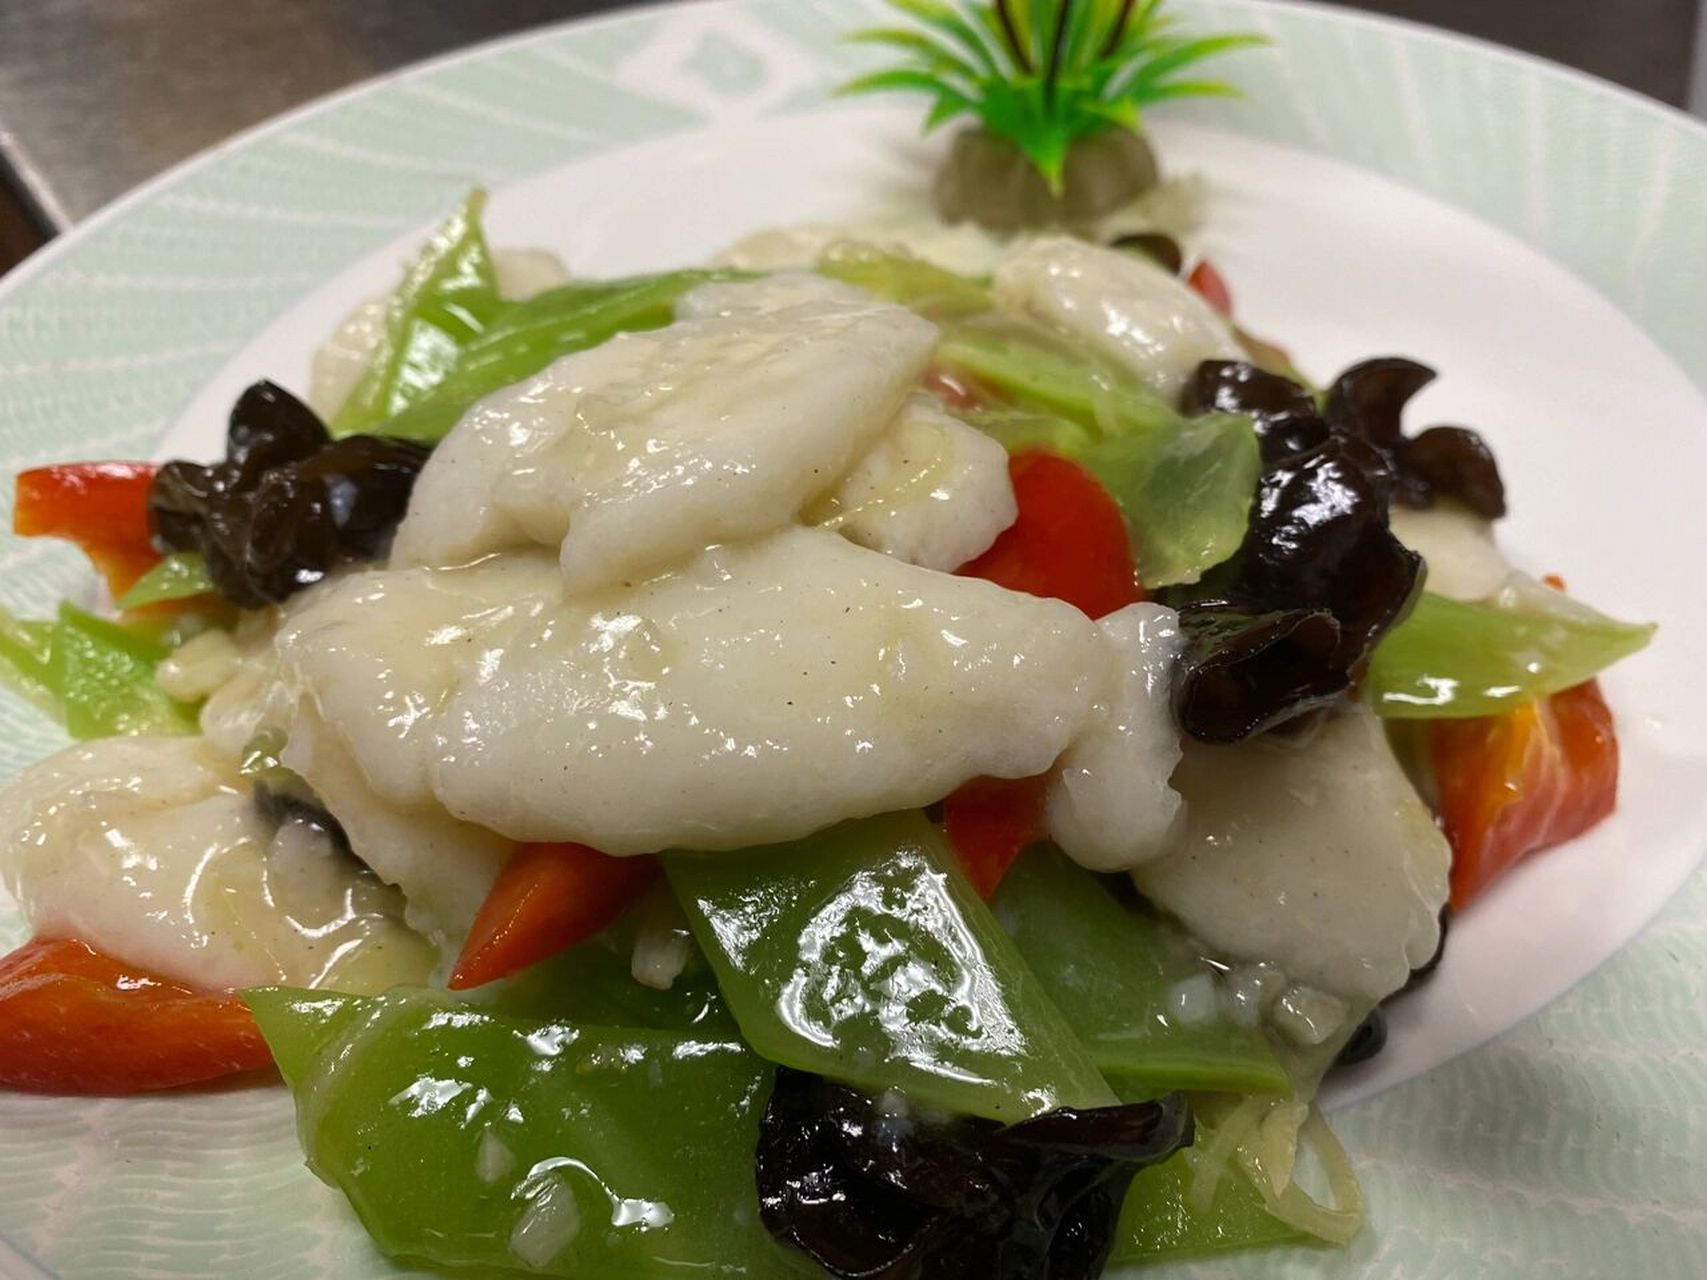 芙蓉鱼片 芙蓉鱼片是淮扬菜中经典的一道名菜,有悠久的历史了,其制作